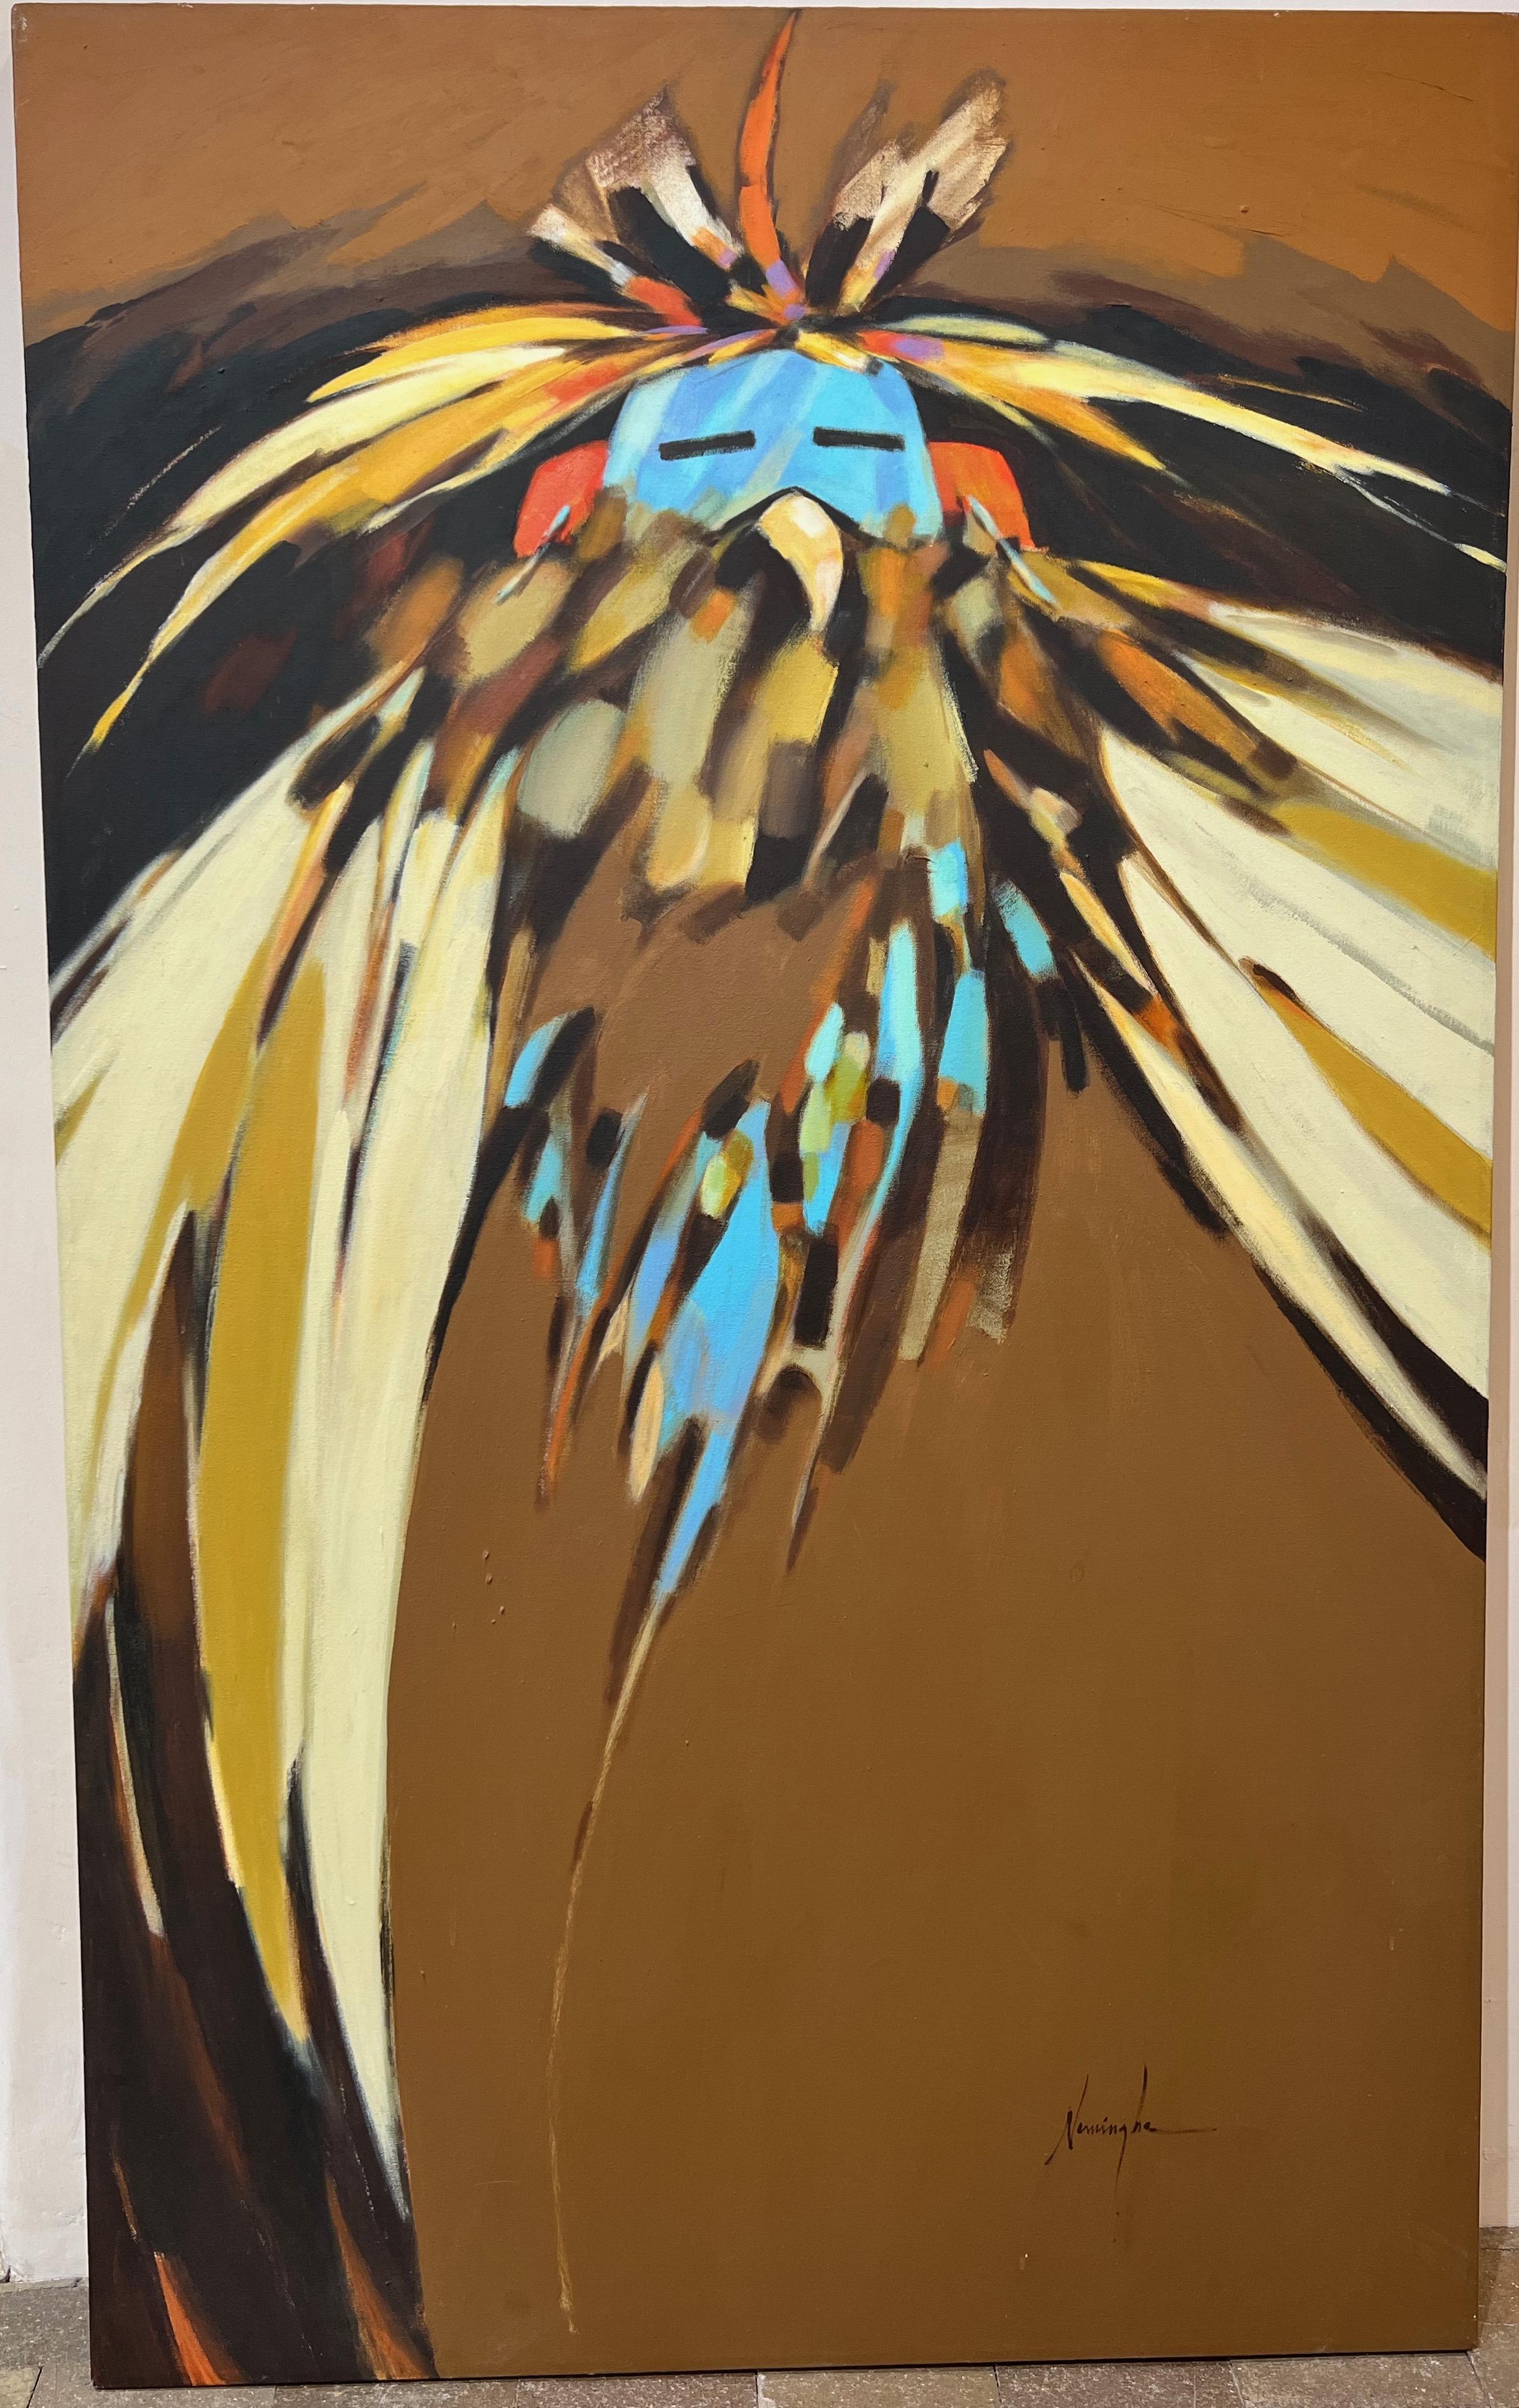 Eagle Kachina, peinture, par Dan Namingha, vertical, brun, rouge, noir, turquoise

Nous présentons des peintures, des gravures et des sculptures de la sommité du Sud-Ouest, DAN NAMINGHA. Notre collection de ses premières lithographies est constituée